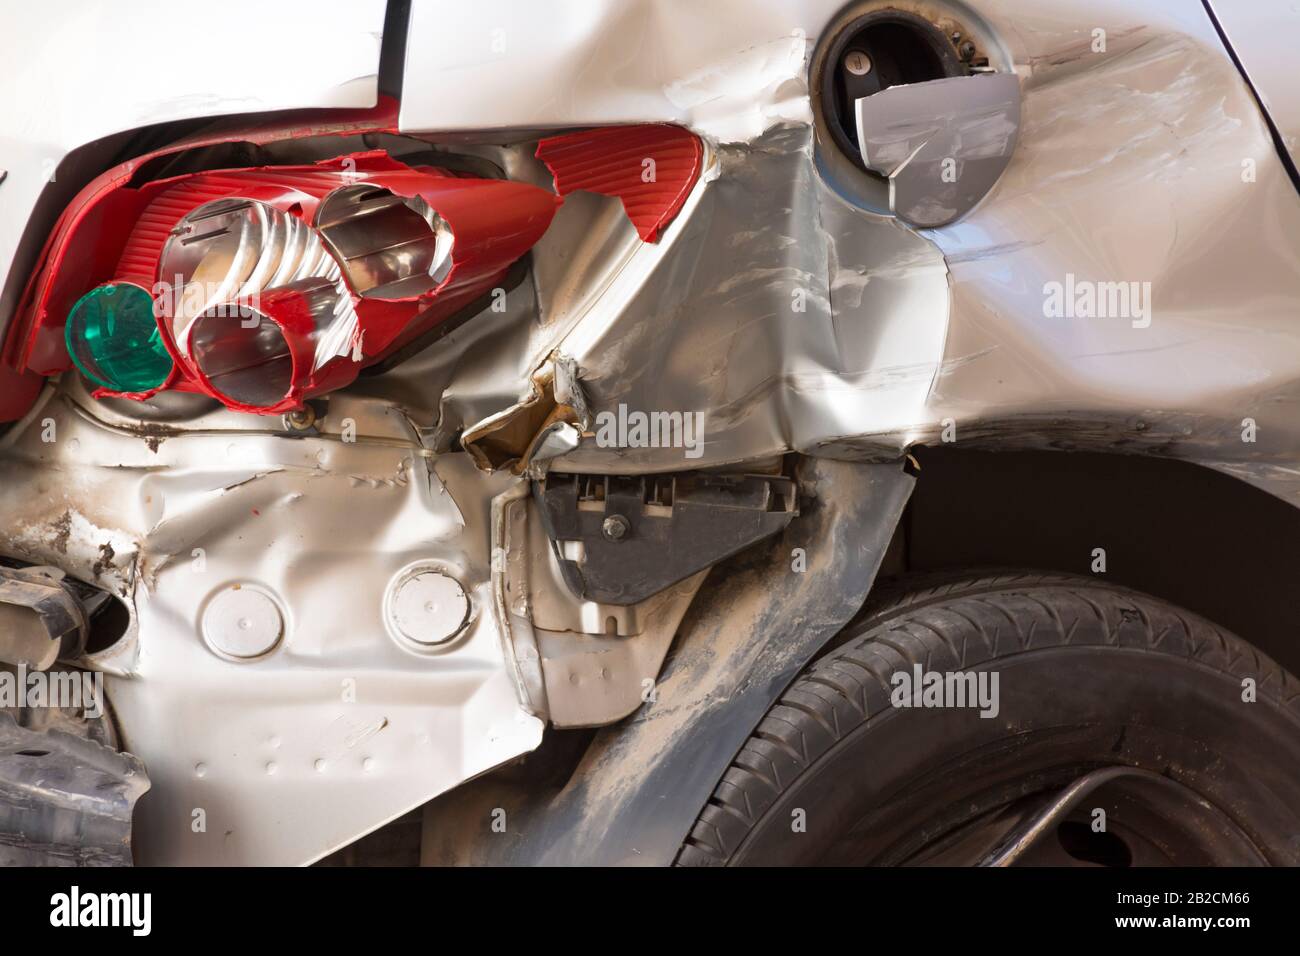 Hinter einem Fahrzeug nach einem Unfall mit mehreren defekten Teilen und mit dem flachen Reifen. Konzept Verkehrssicherheit und Autoversicherung Stockfoto